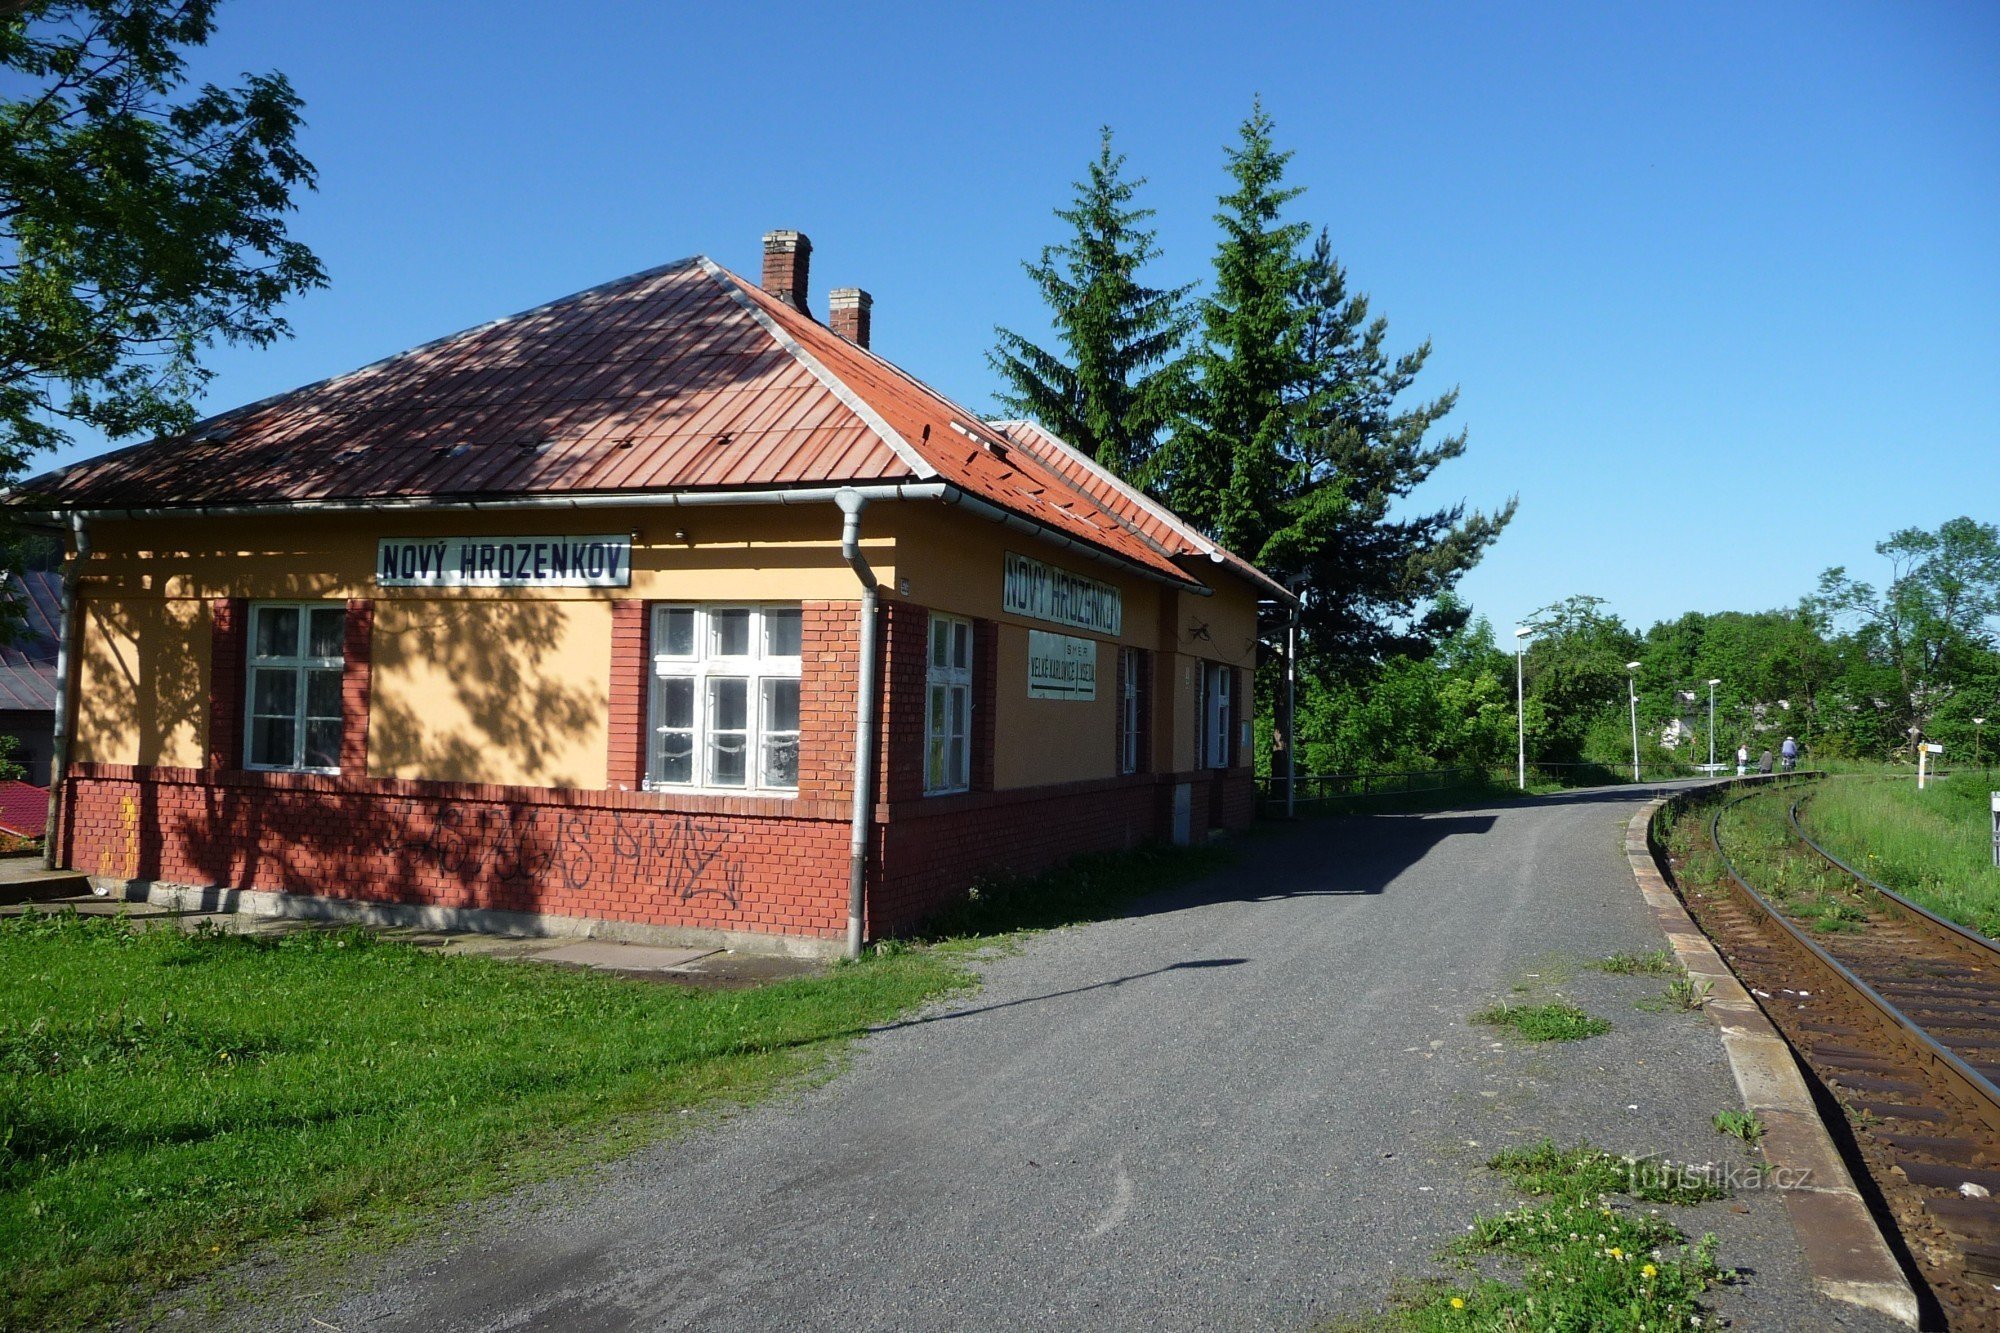 Autobusna stanica ČSD - Nový Hrozenkov